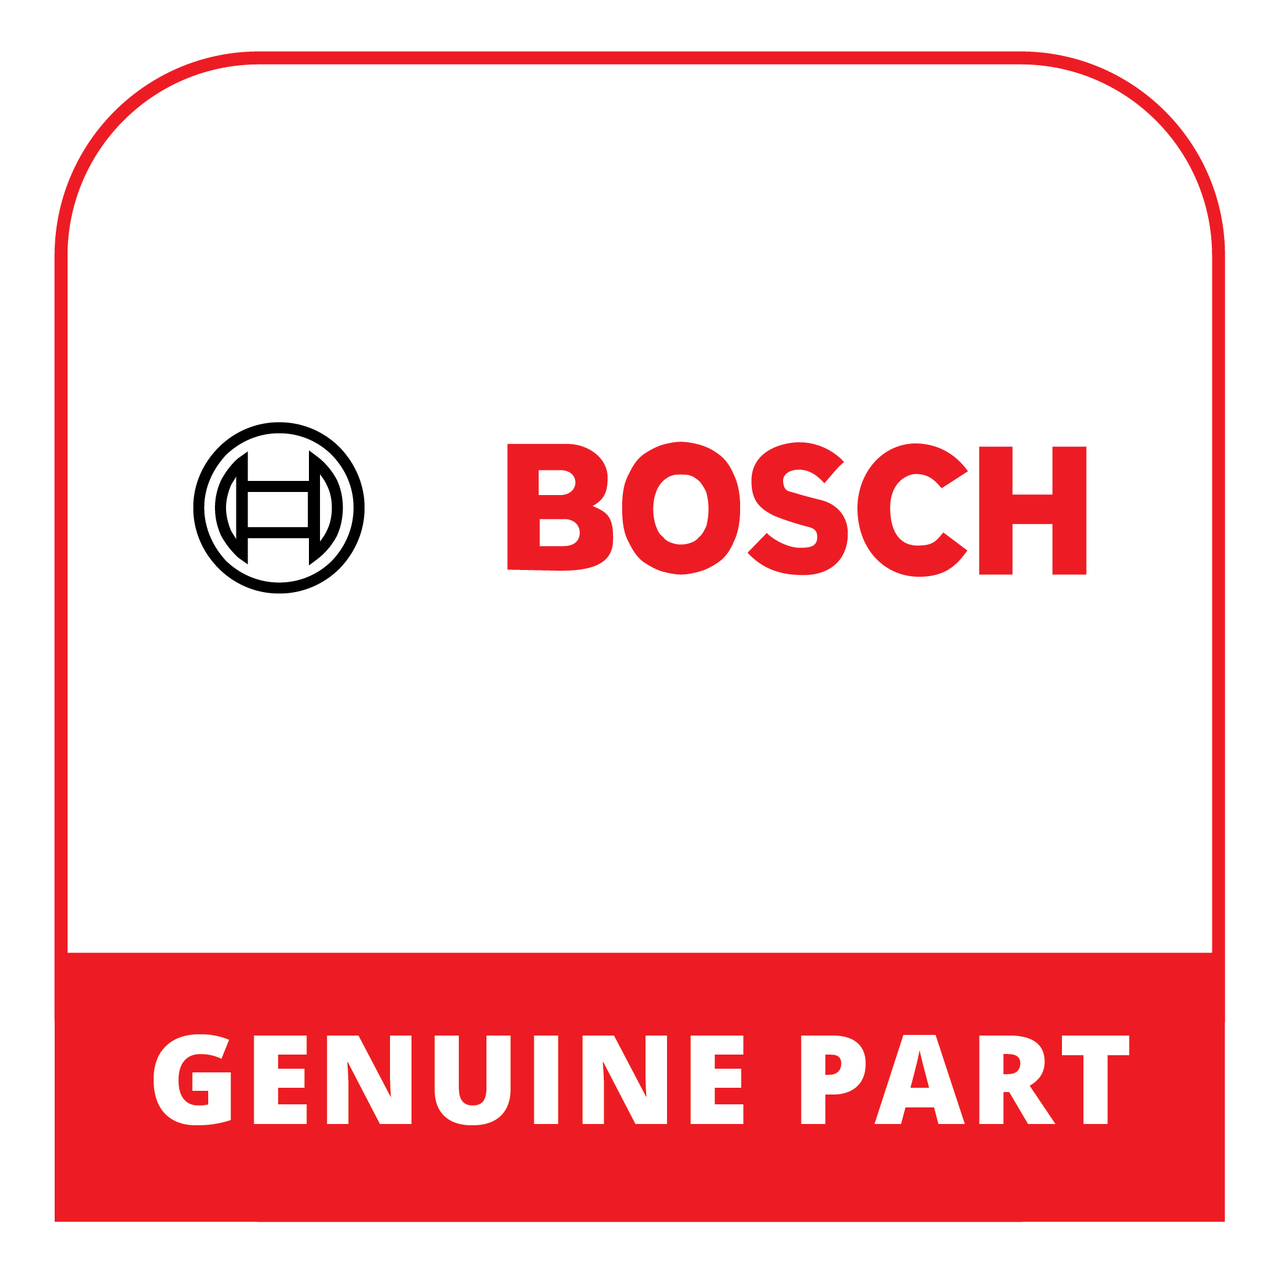 Bosch (Thermador) 23002262 - Door - Genuine Bosch (Thermador) Part